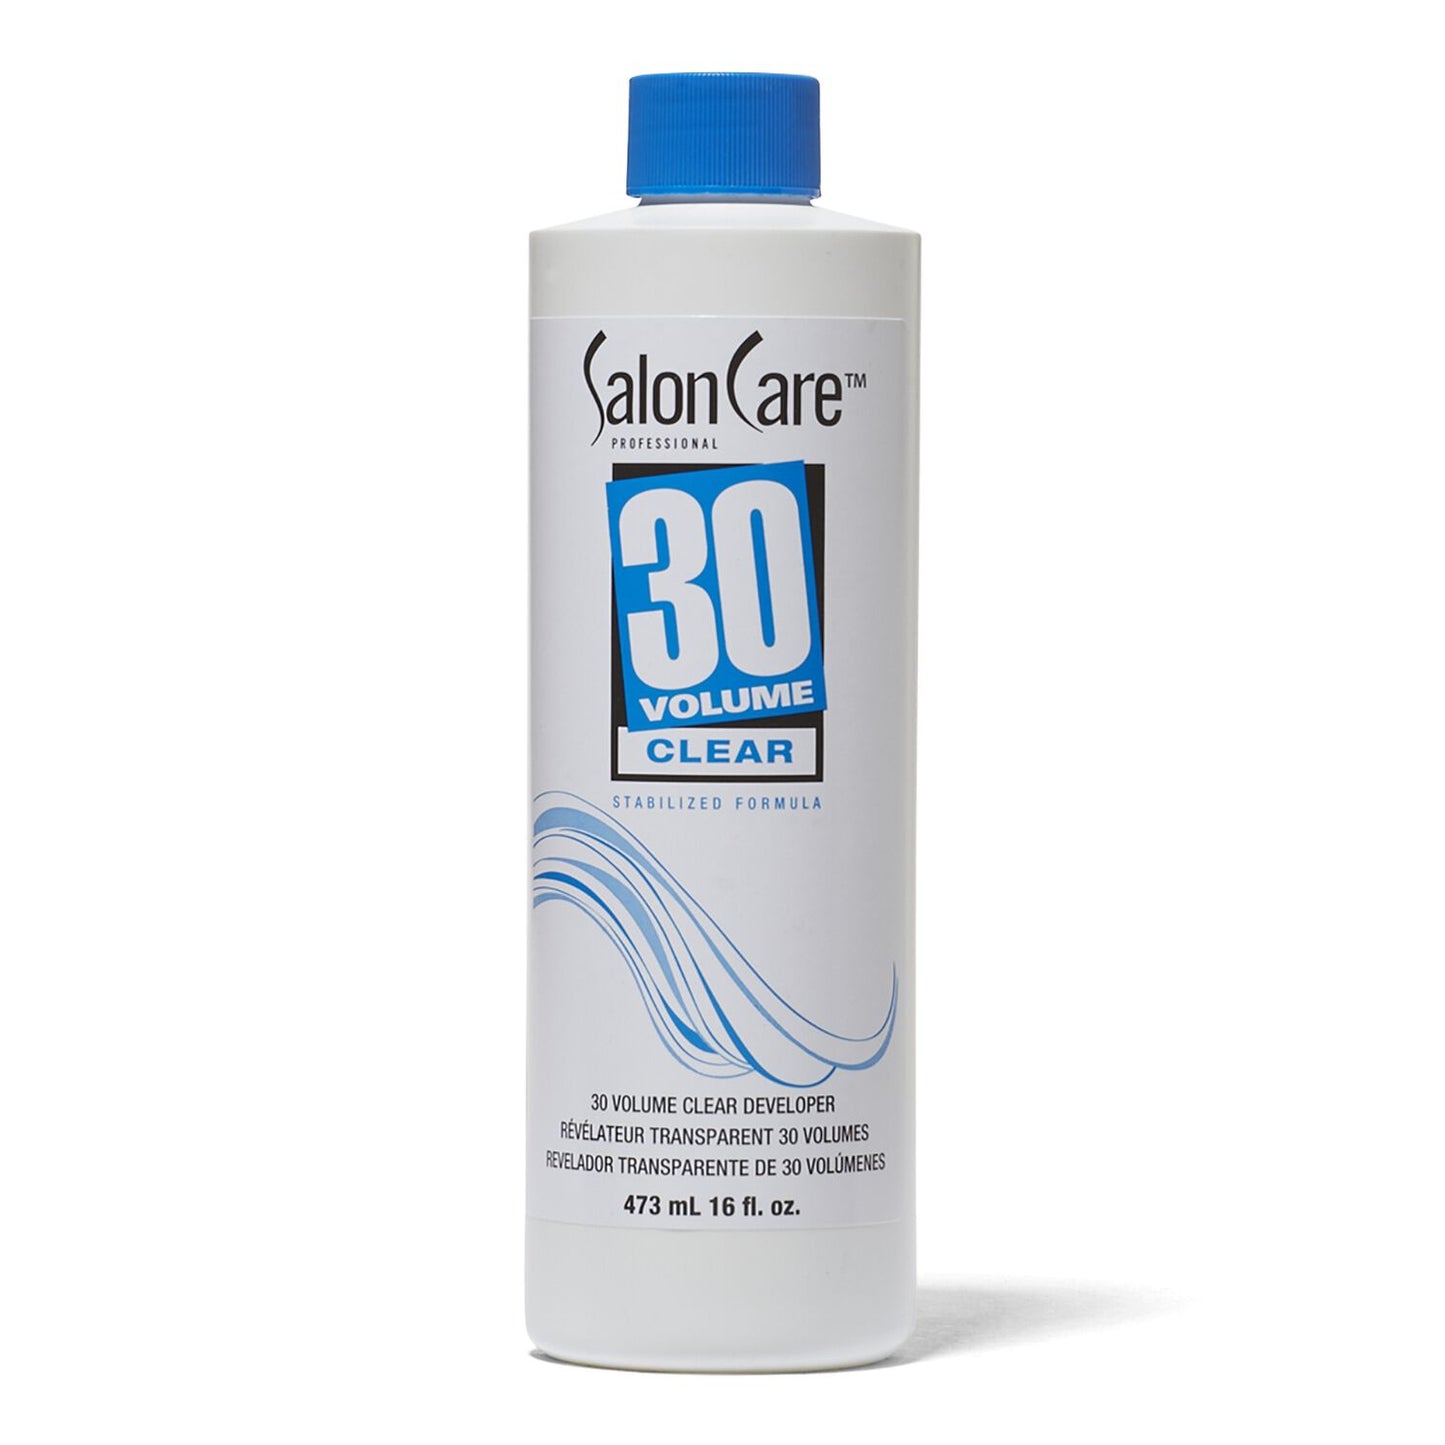 Salon Care 30 Volume Clear Developer